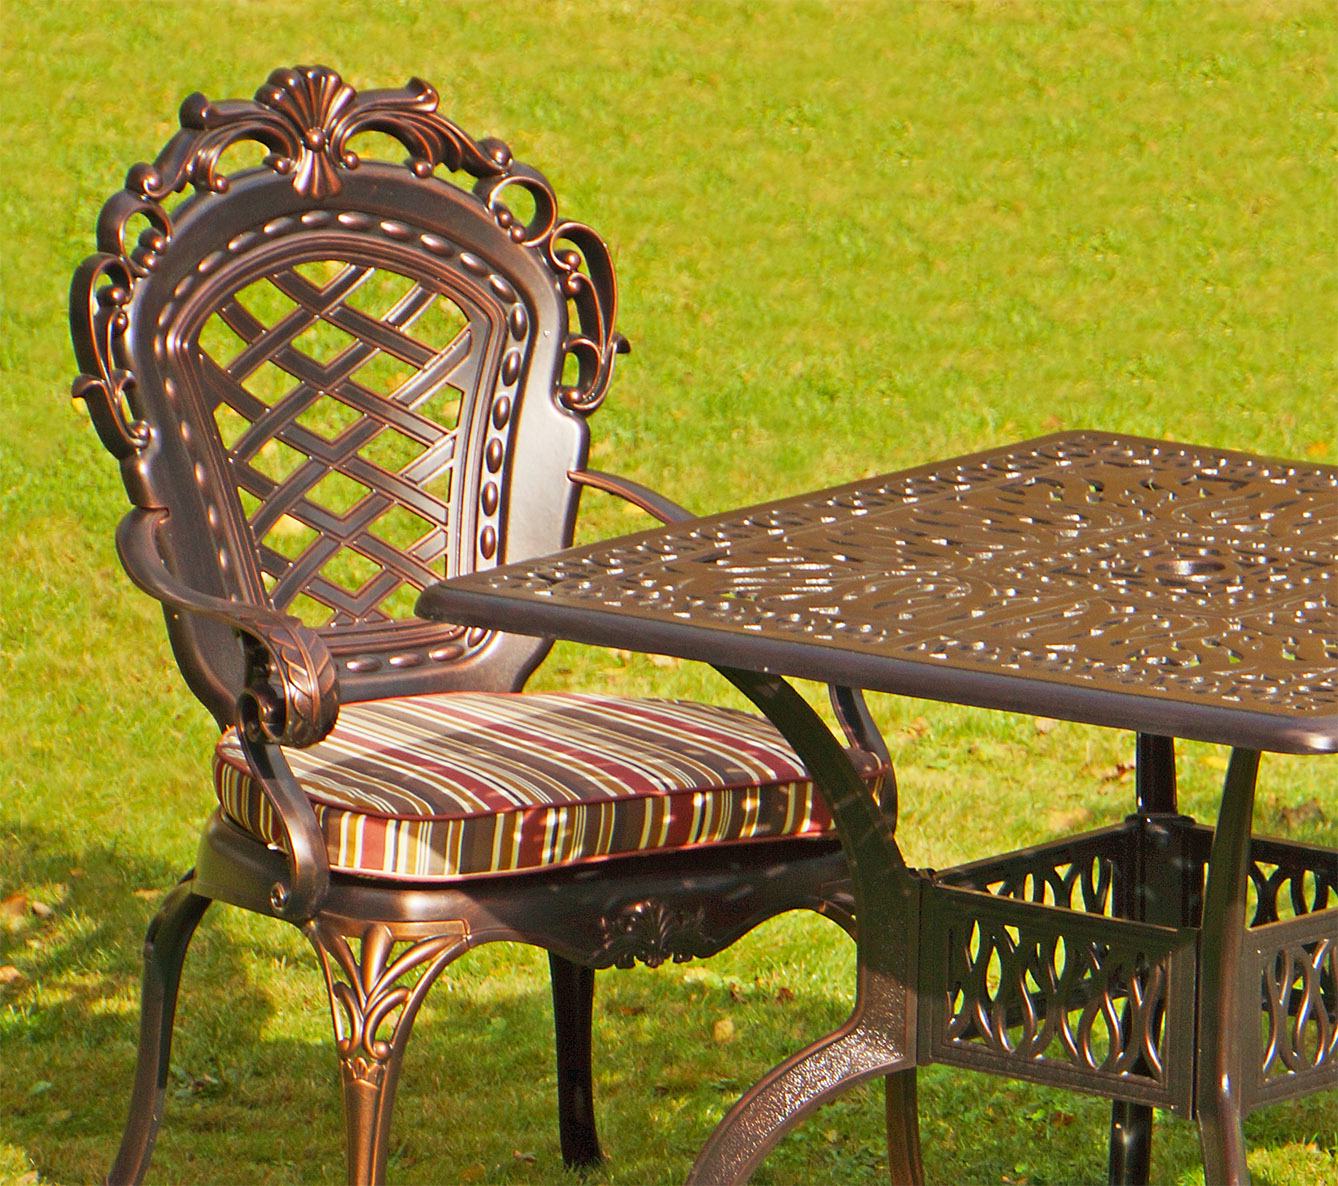 Ажурное садовое кресло Корона, мебель из литого алюминия для ресторанов и гостиниц, чугунный стол, литая мебель для сада, стол и стулья в беседку, мебель лофт для таунхаусов